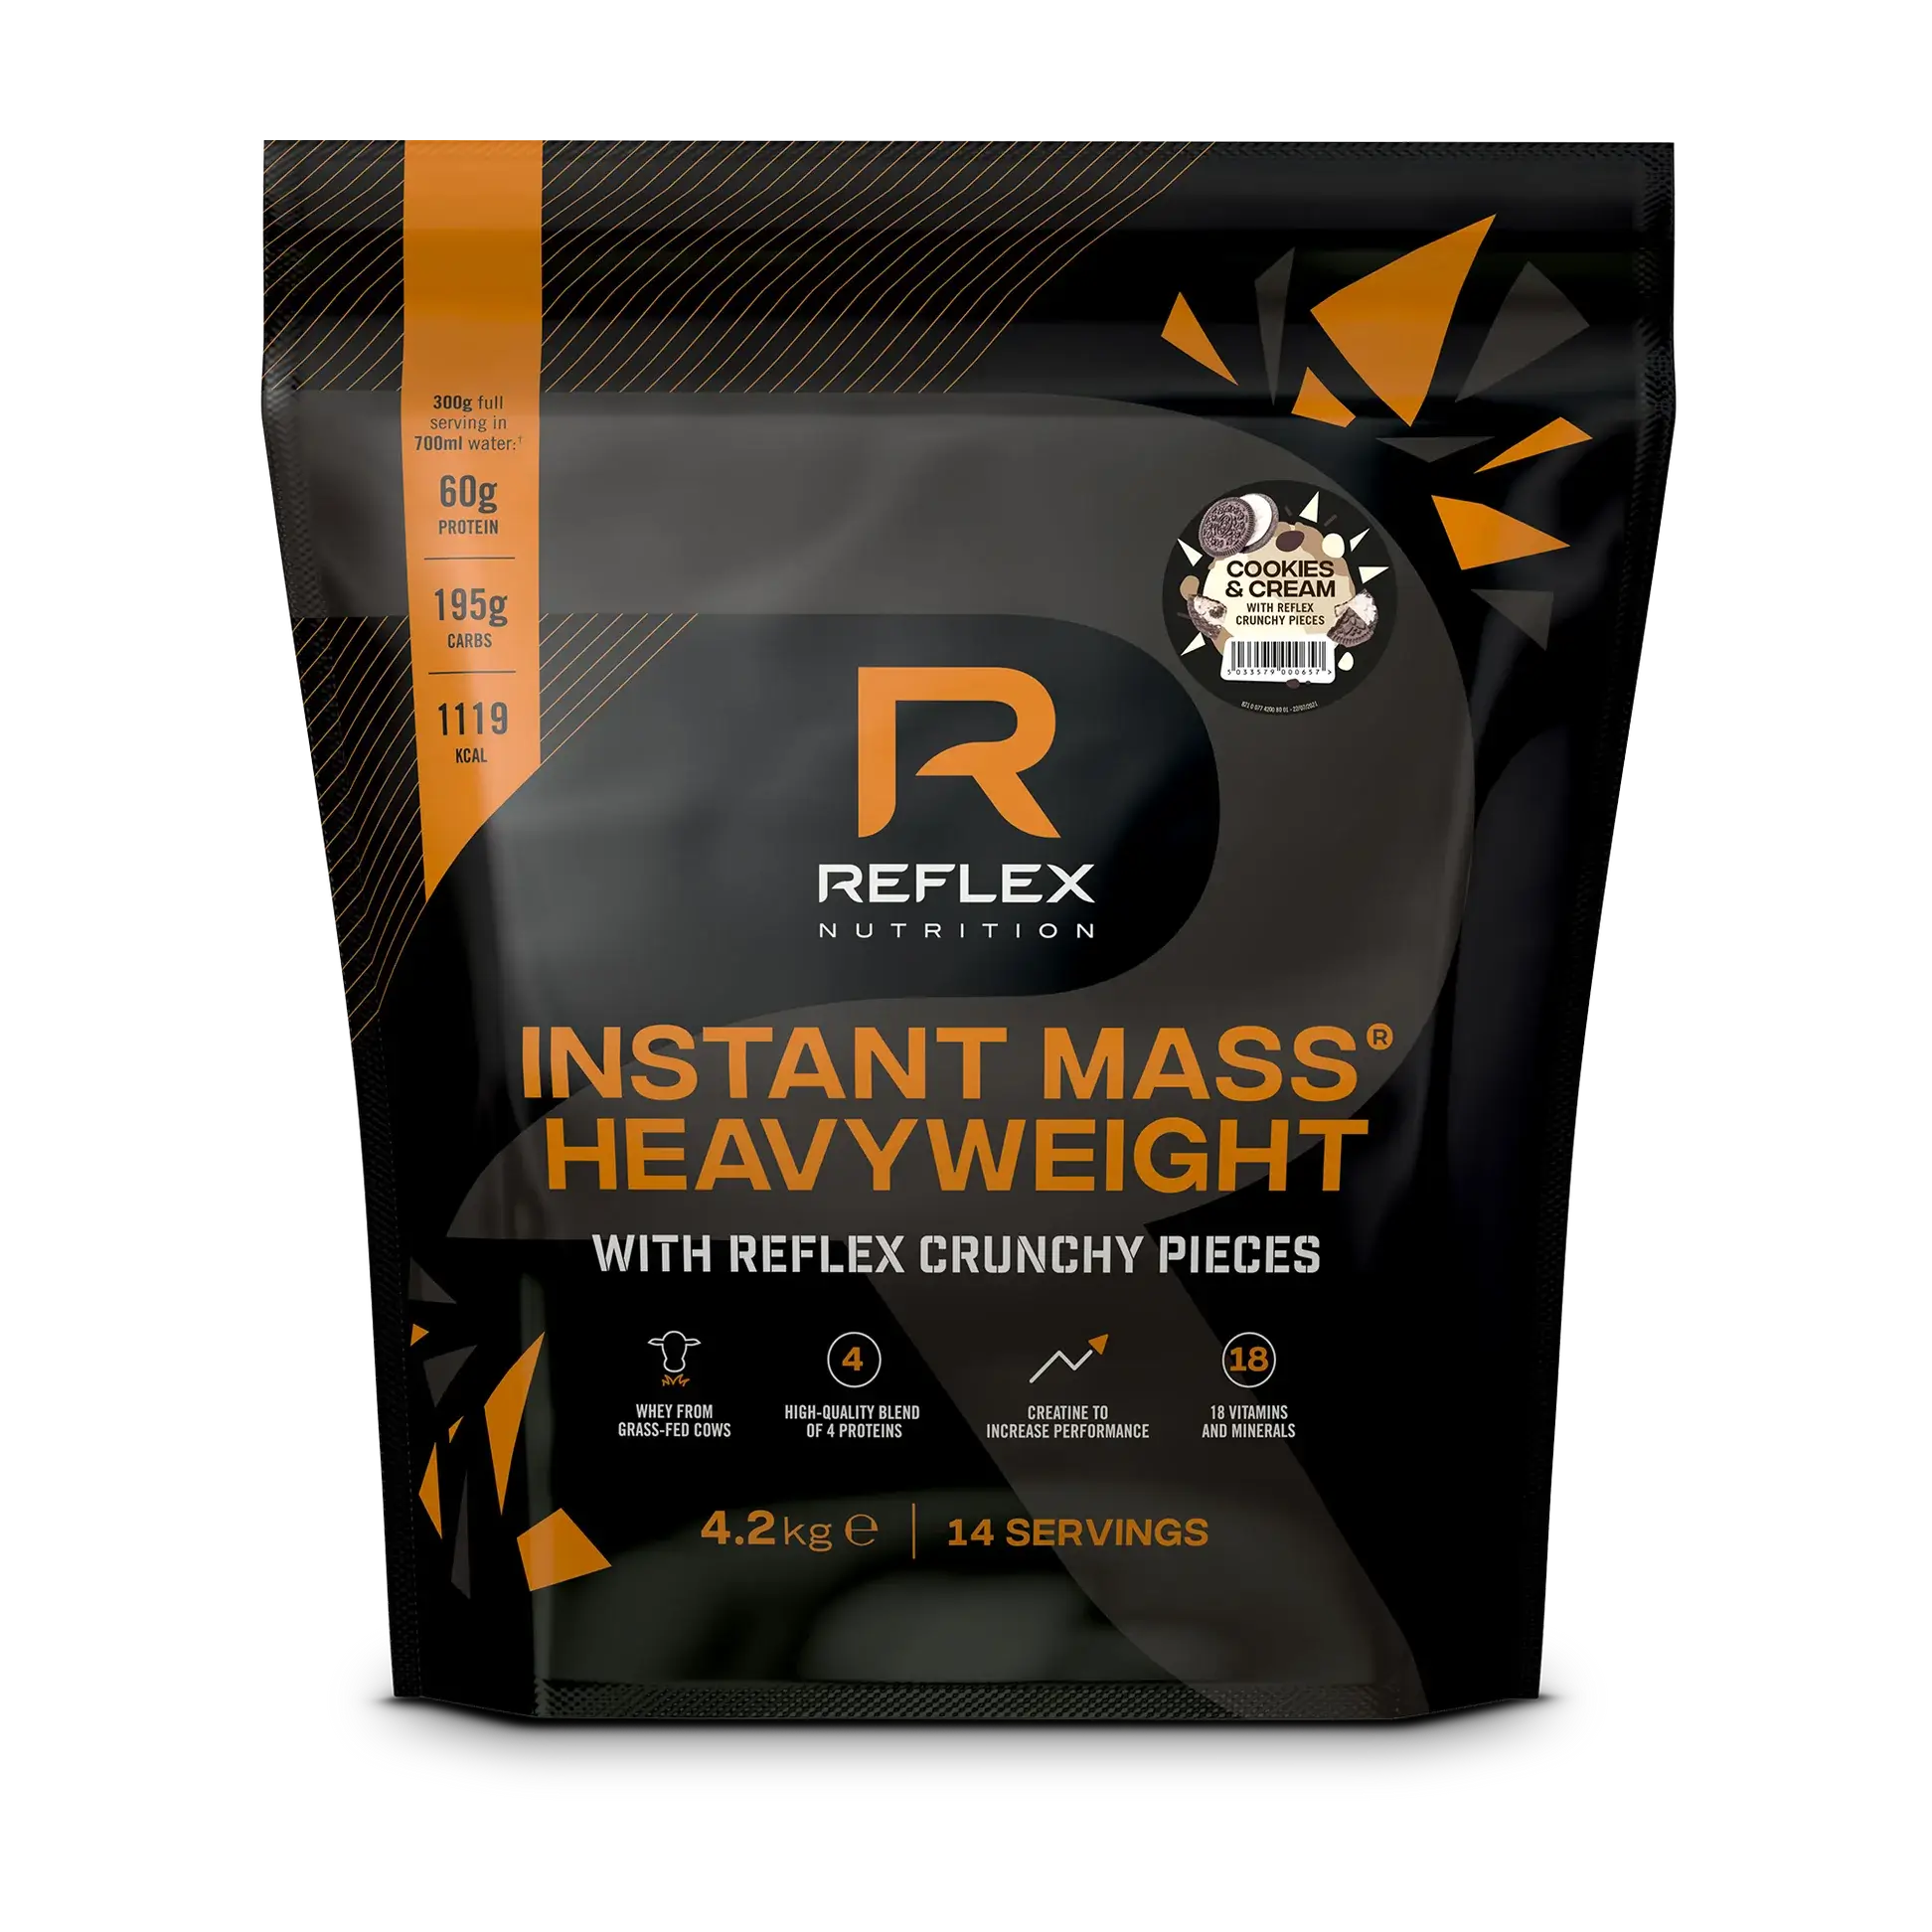 REFLEX - Instant Mass Heavyweight - Crunchy Pieces